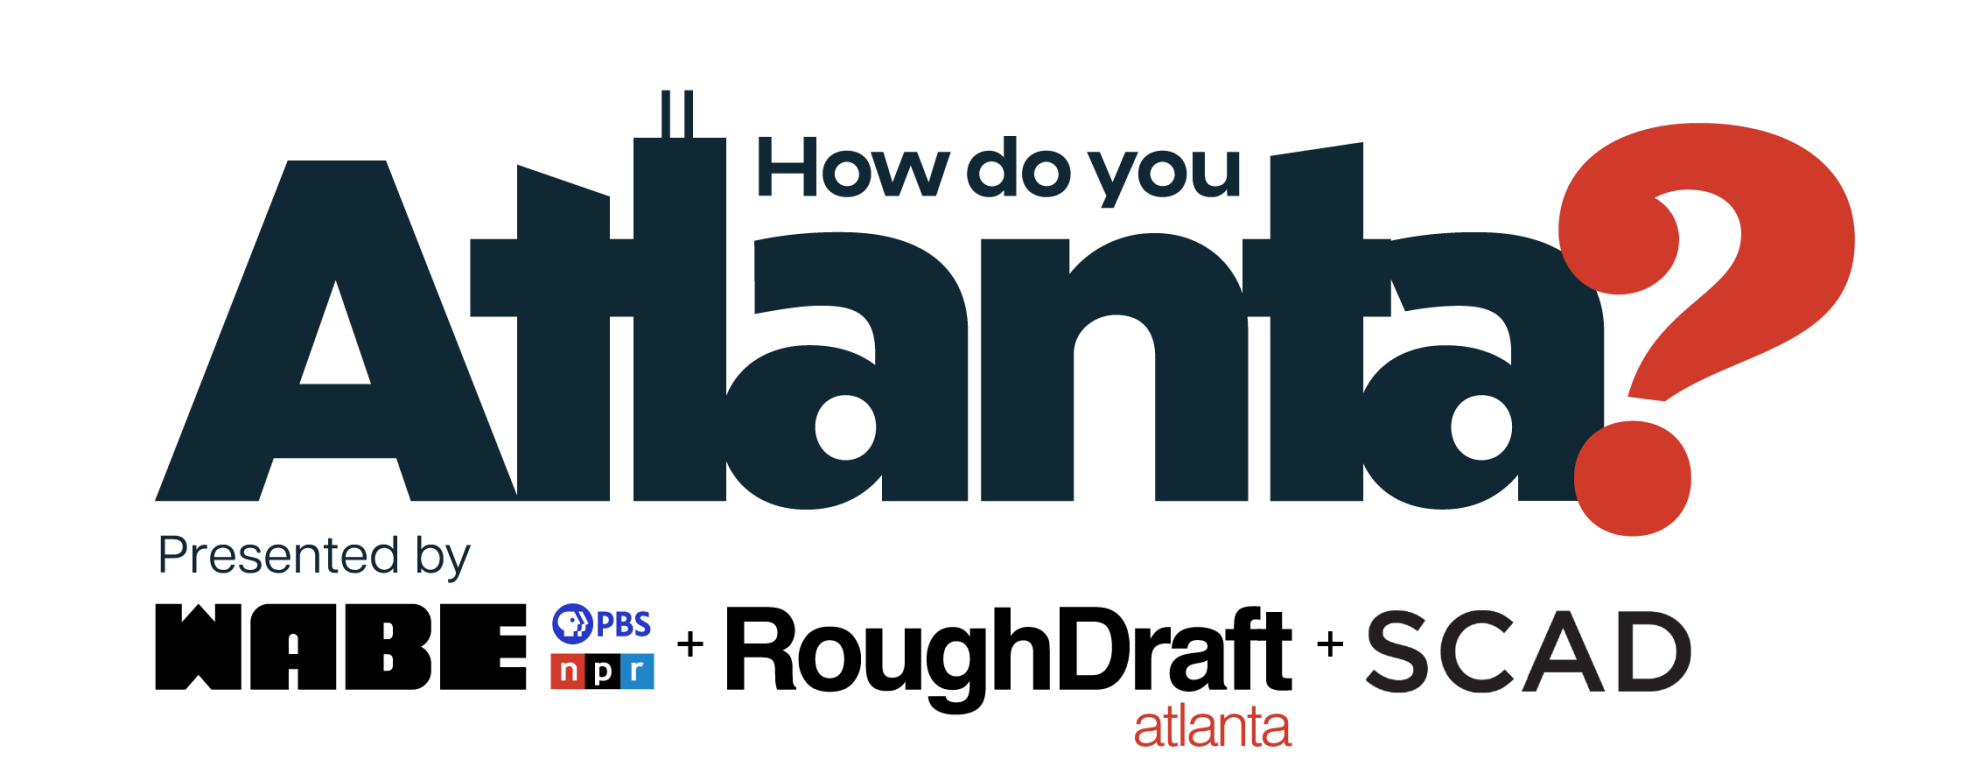 How Do You Atlanta?